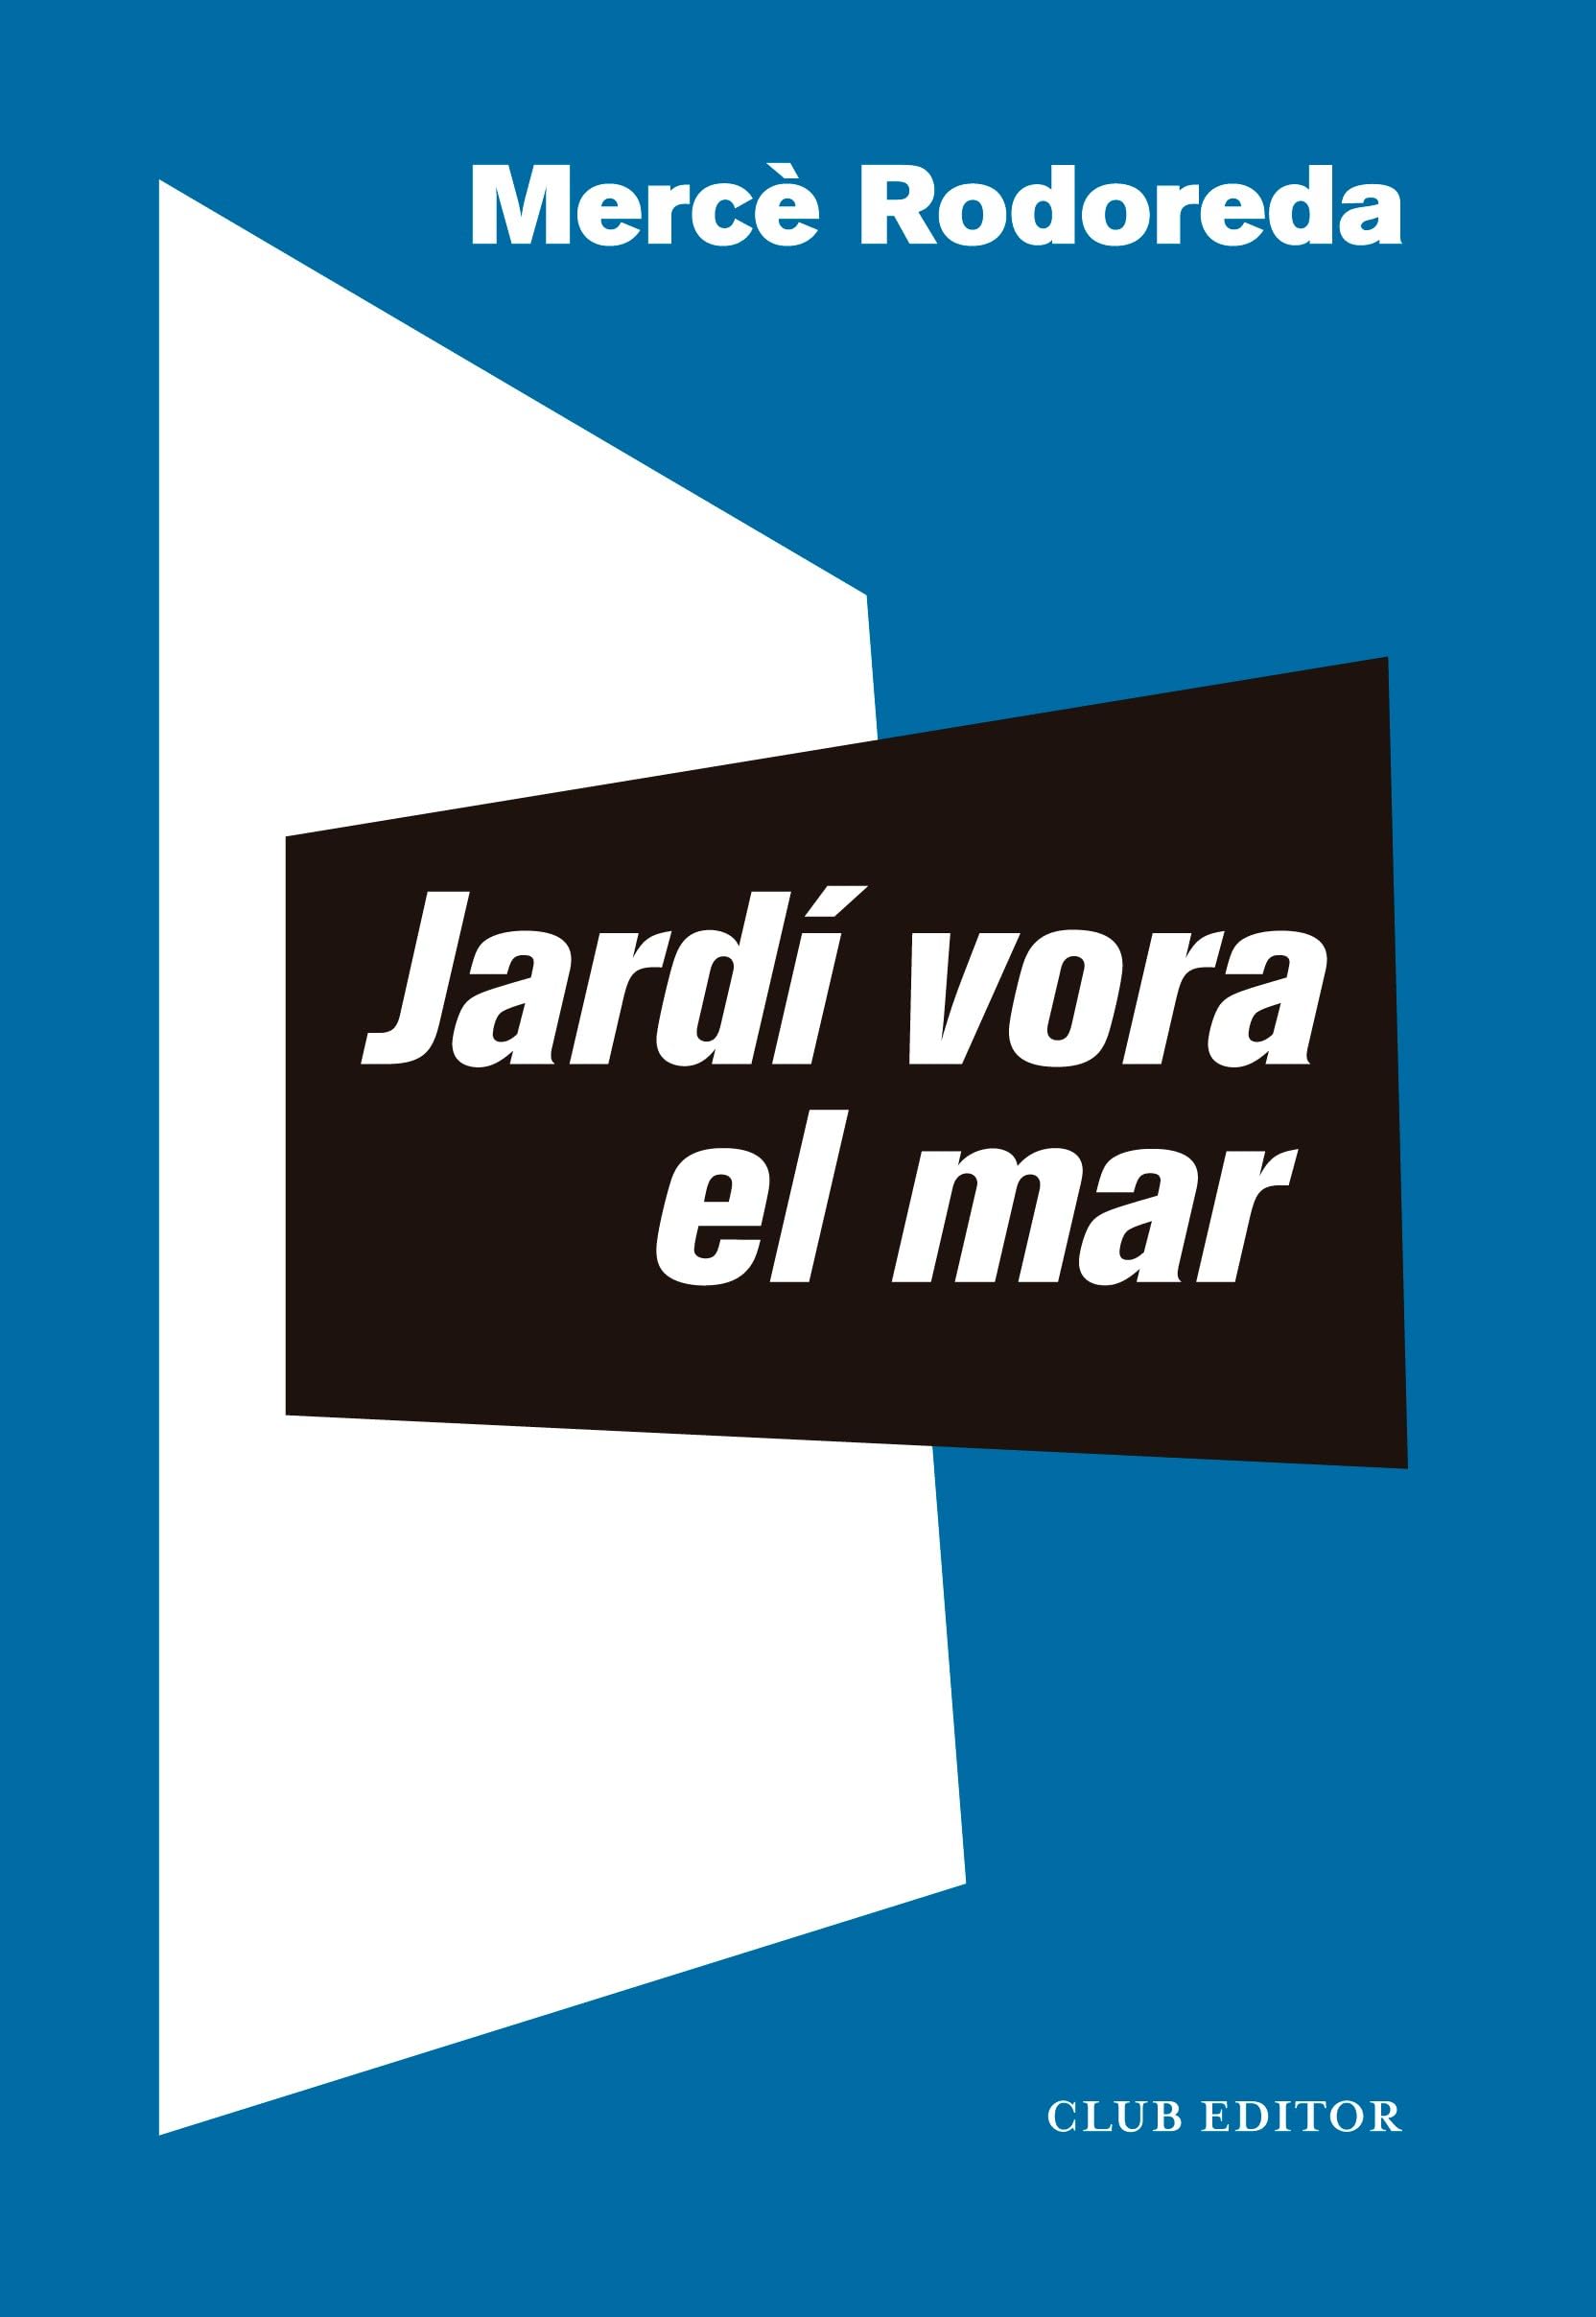 Jardí vora el mar (Català language, 2023, Club Editor)